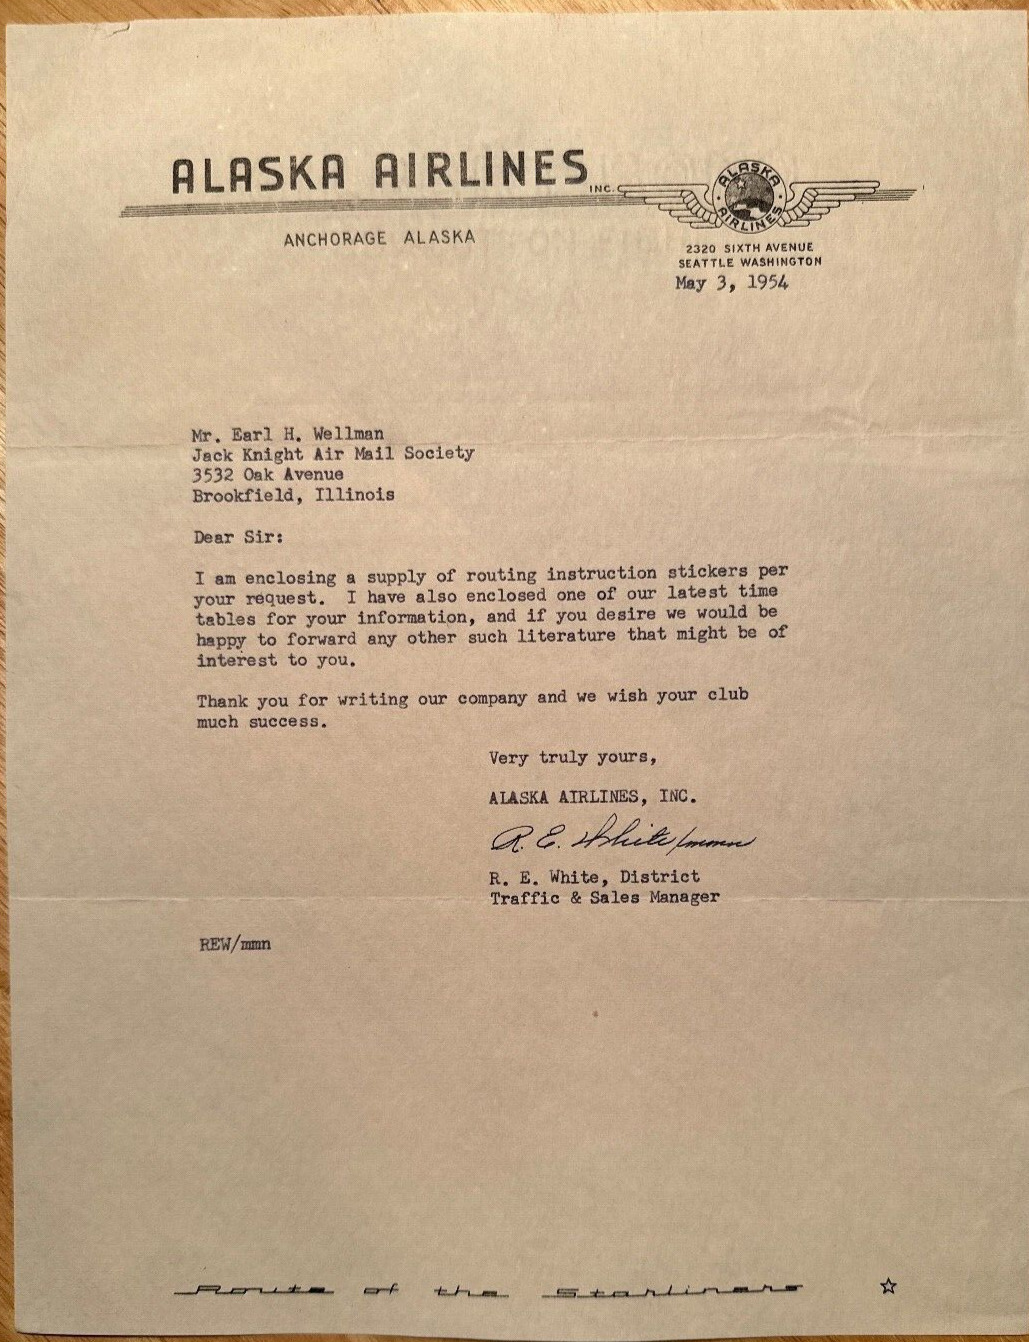 Alaska Airlines - 1954 Anchorage, Alaska vintage business letter